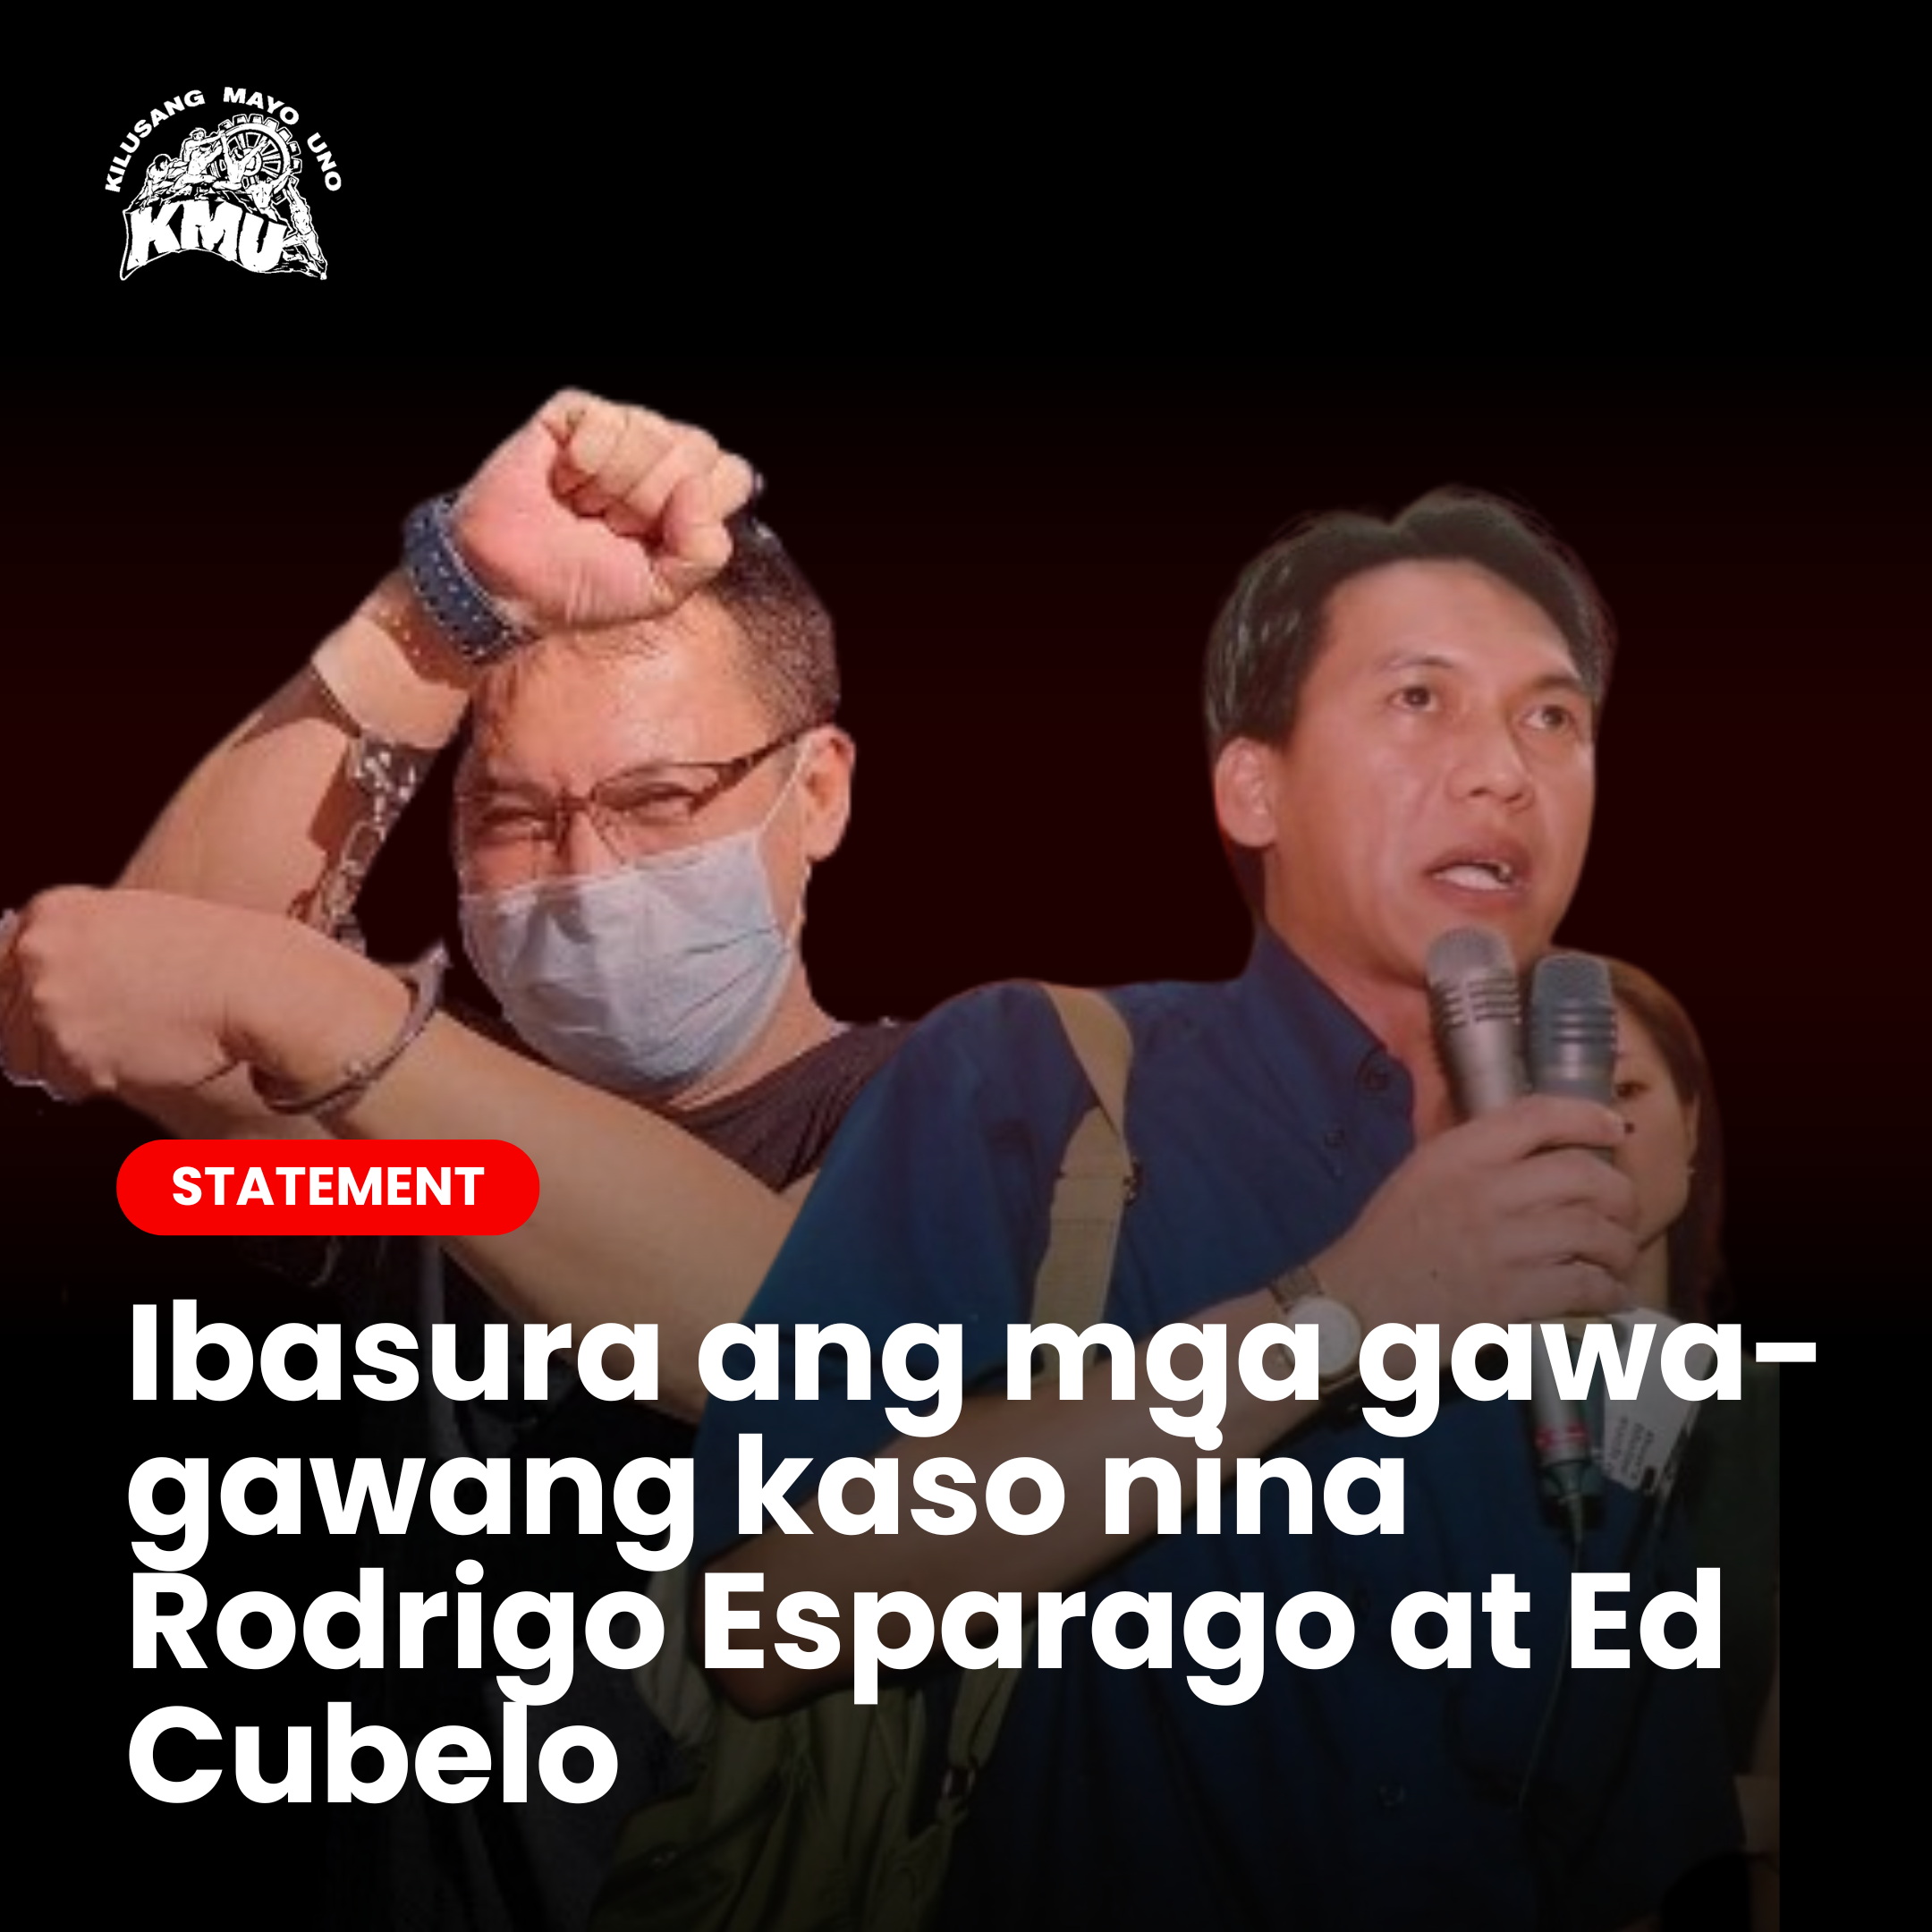 Ibasura ang mga gawa-gawang kaso nina Rodrigo Esparago at Ed Cubelo!